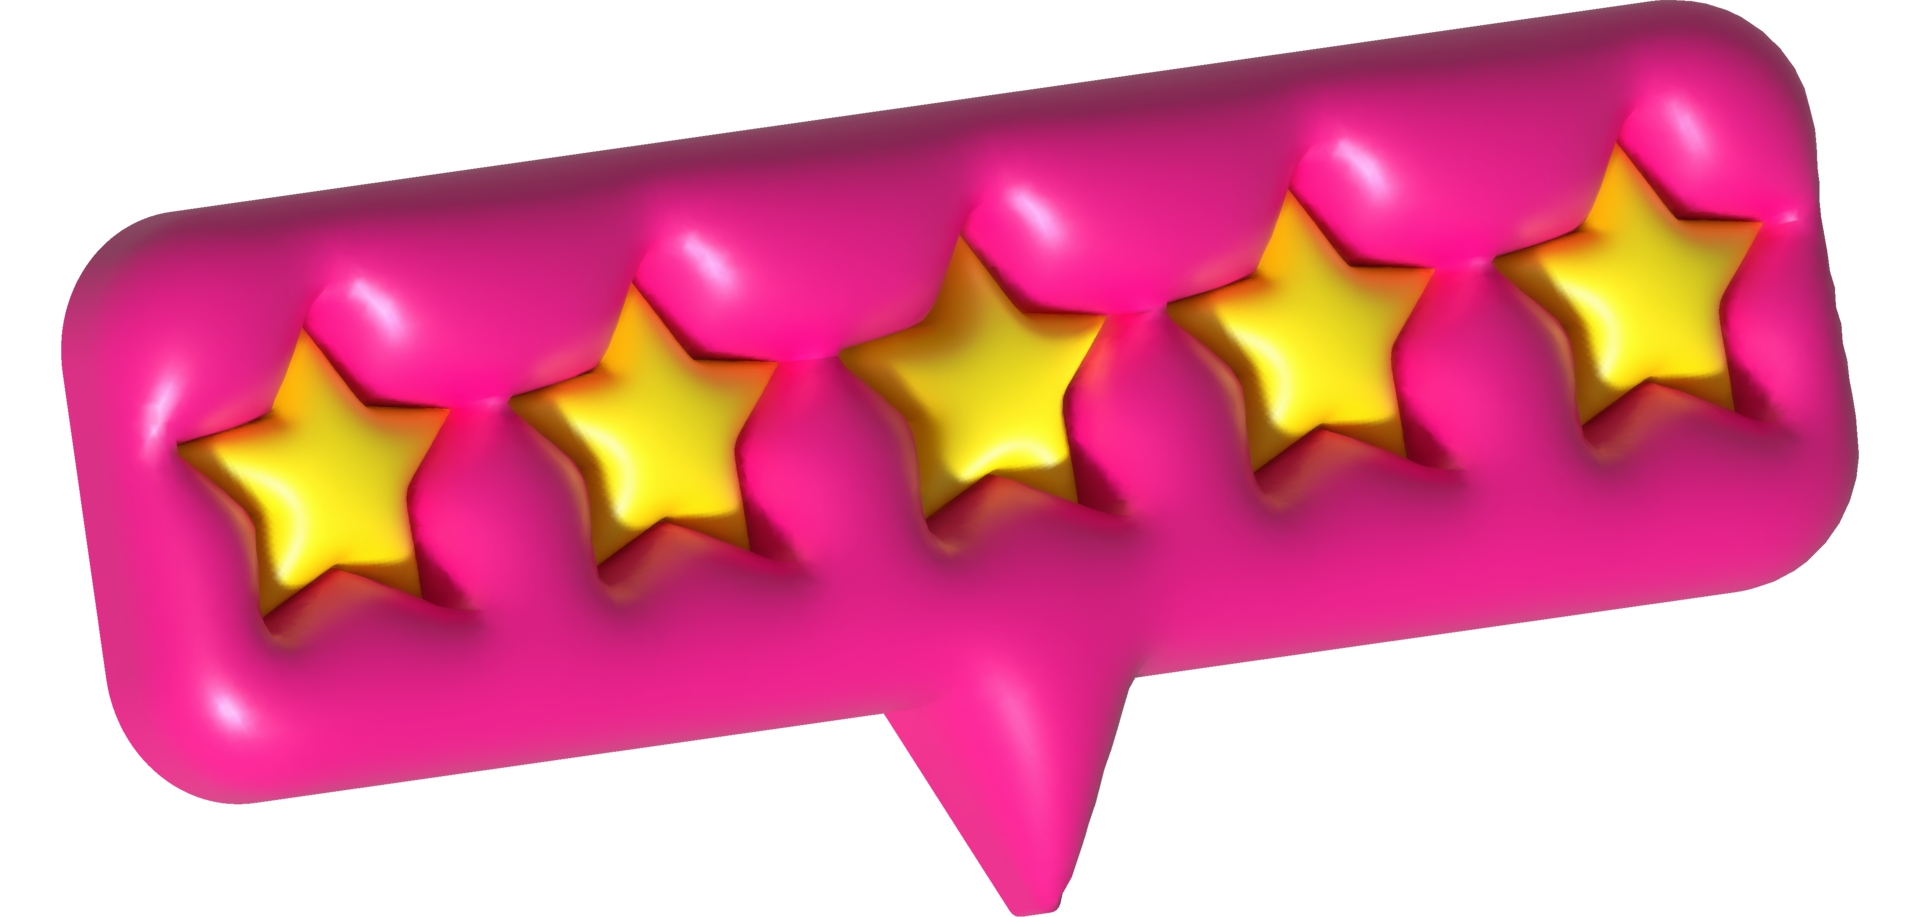 recension 3d betyg stjärnor för bäst excellent tjänster betyg för tillfredsställelse. recension för kvalitet kund betyg respons. png